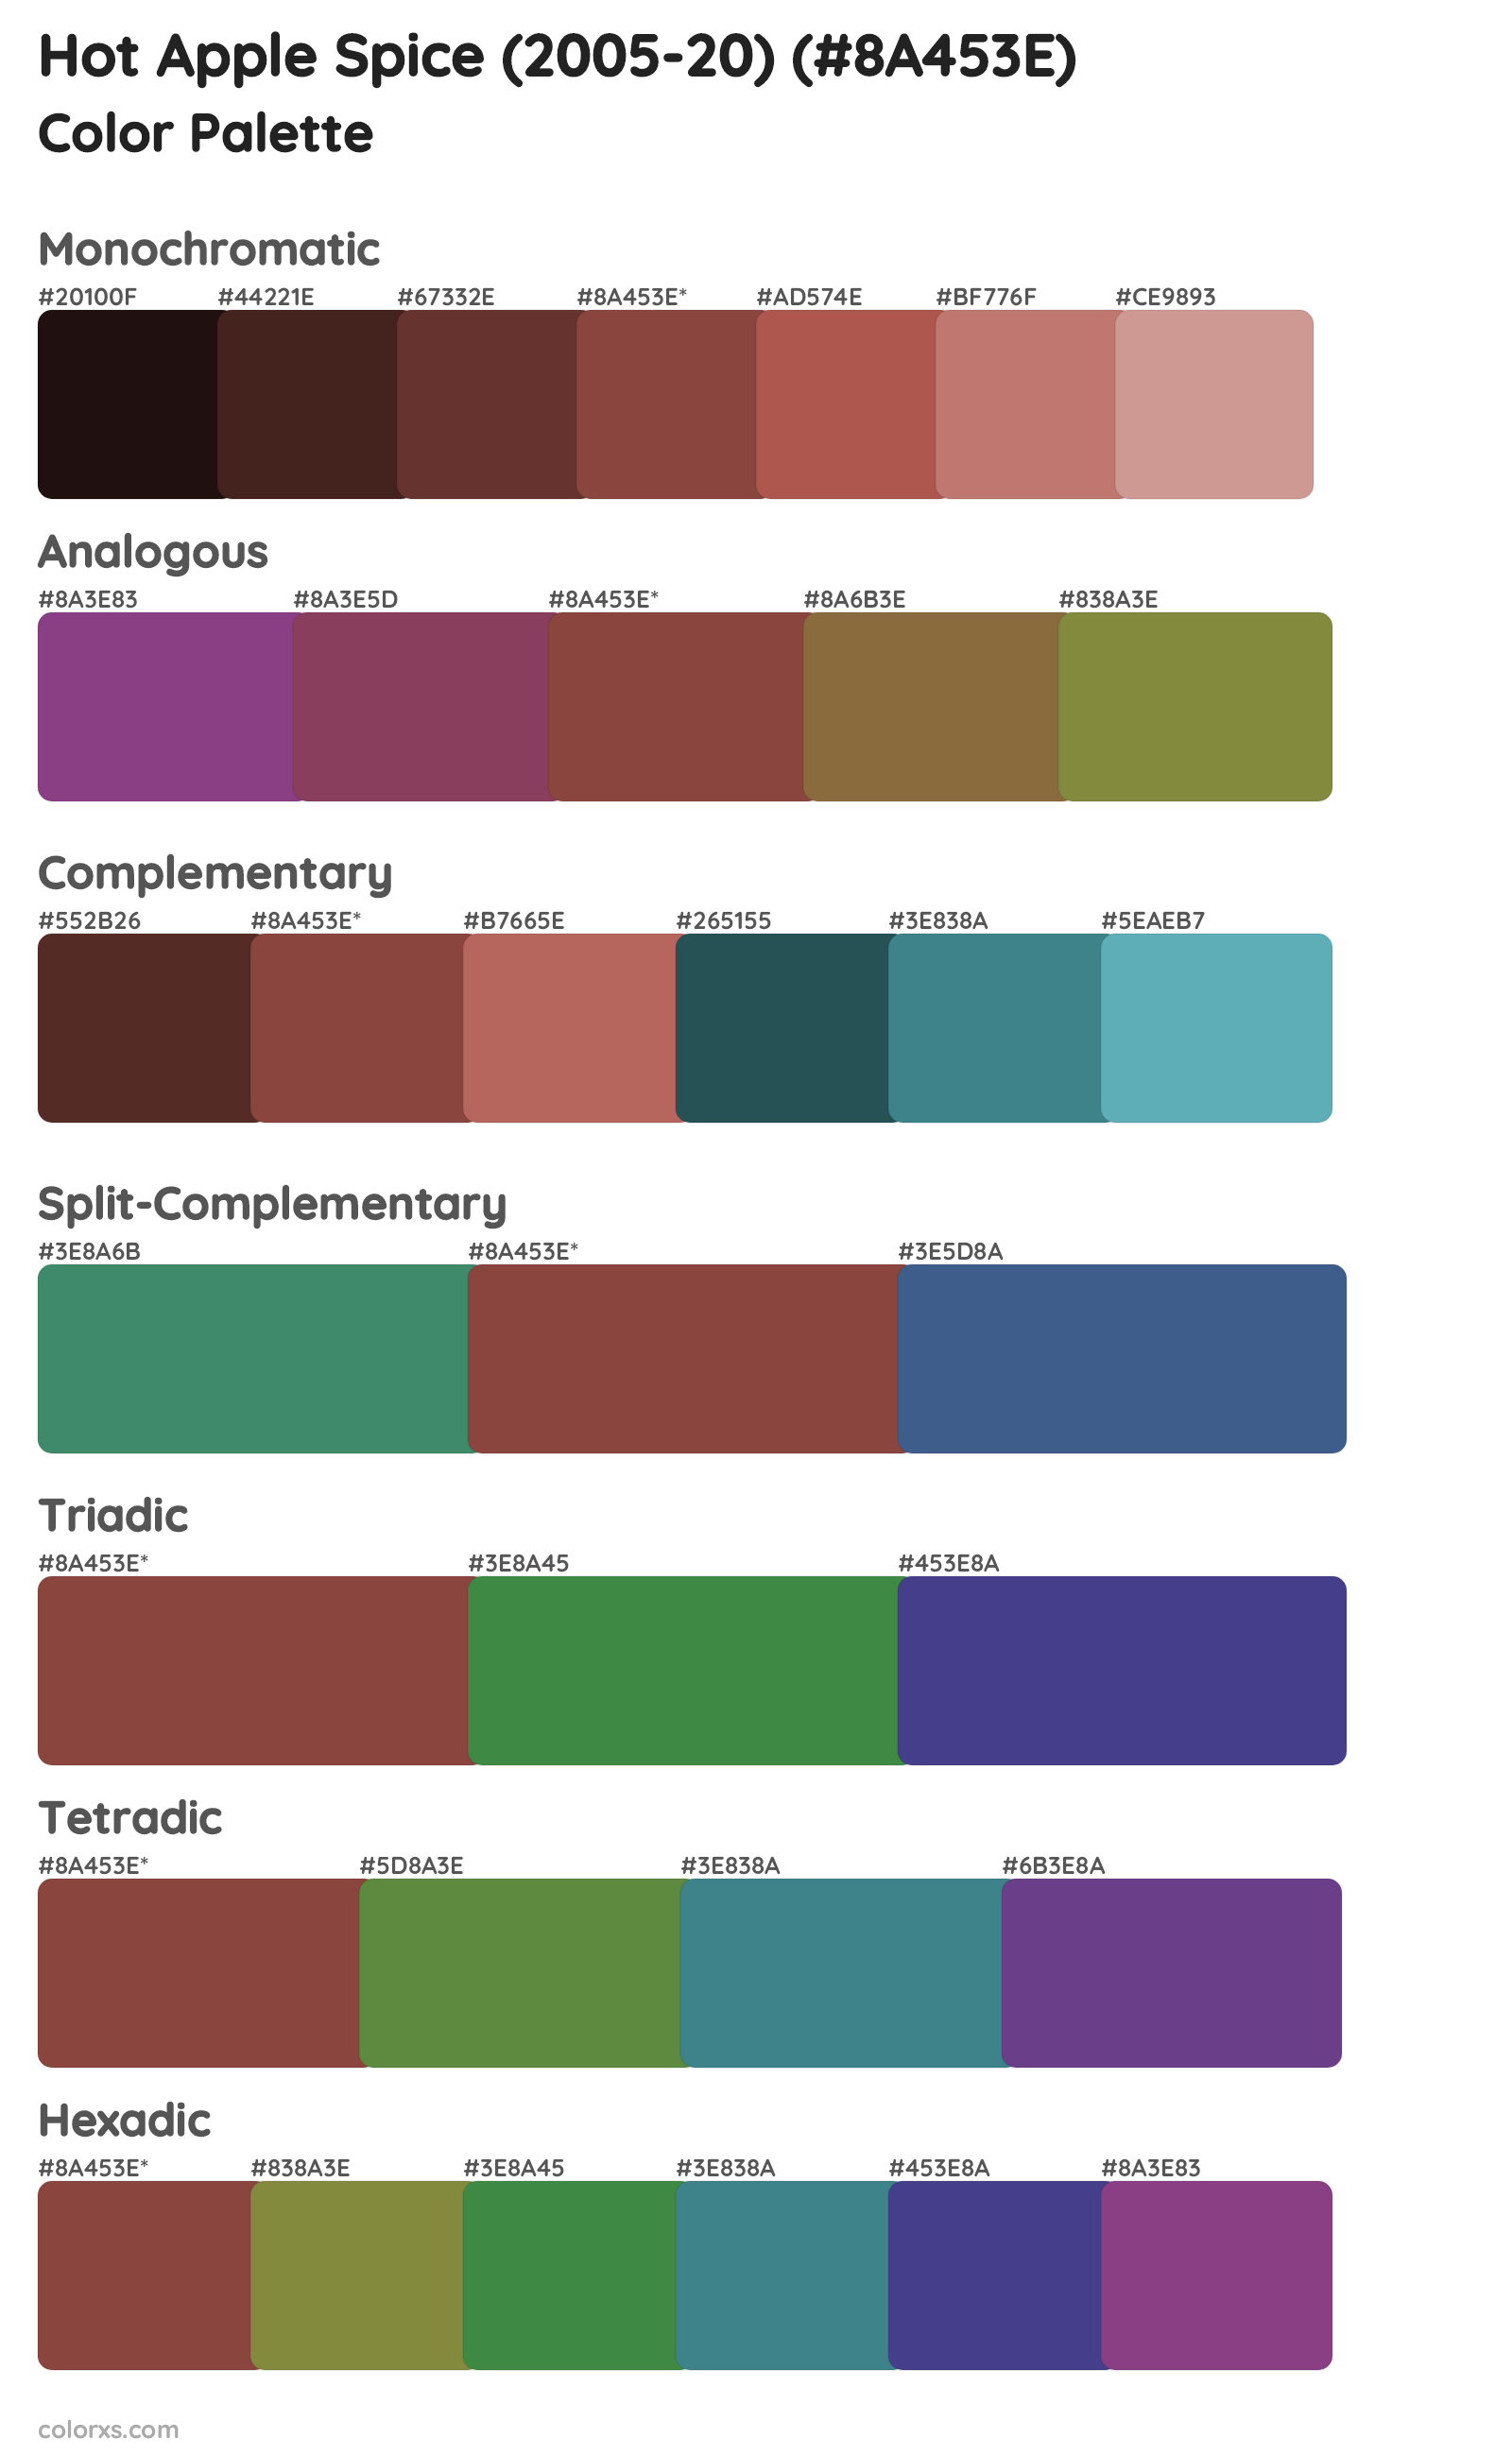 Hot Apple Spice (2005-20) Color Scheme Palettes